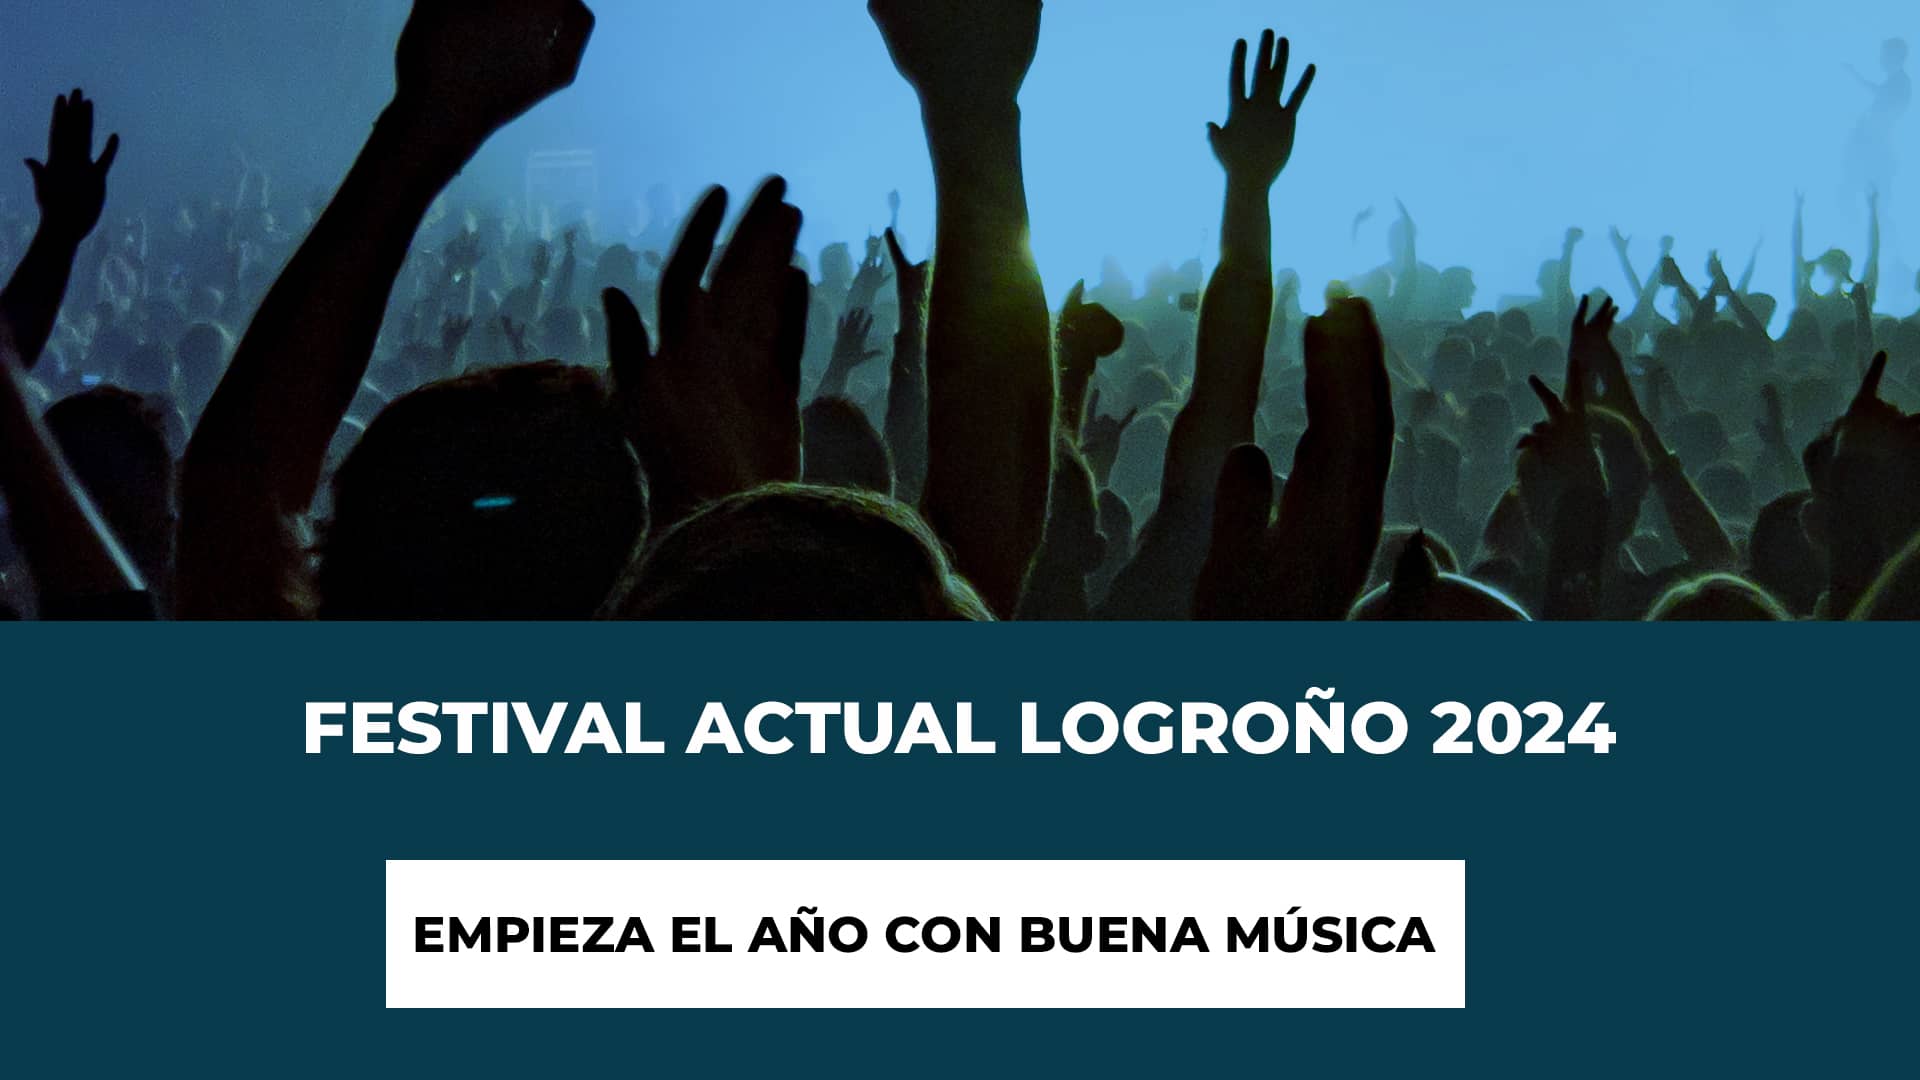 Festival Actual Logroño 2024: Empieza el año con buena música - Recinto y estilos musicales - Entradas para el festival